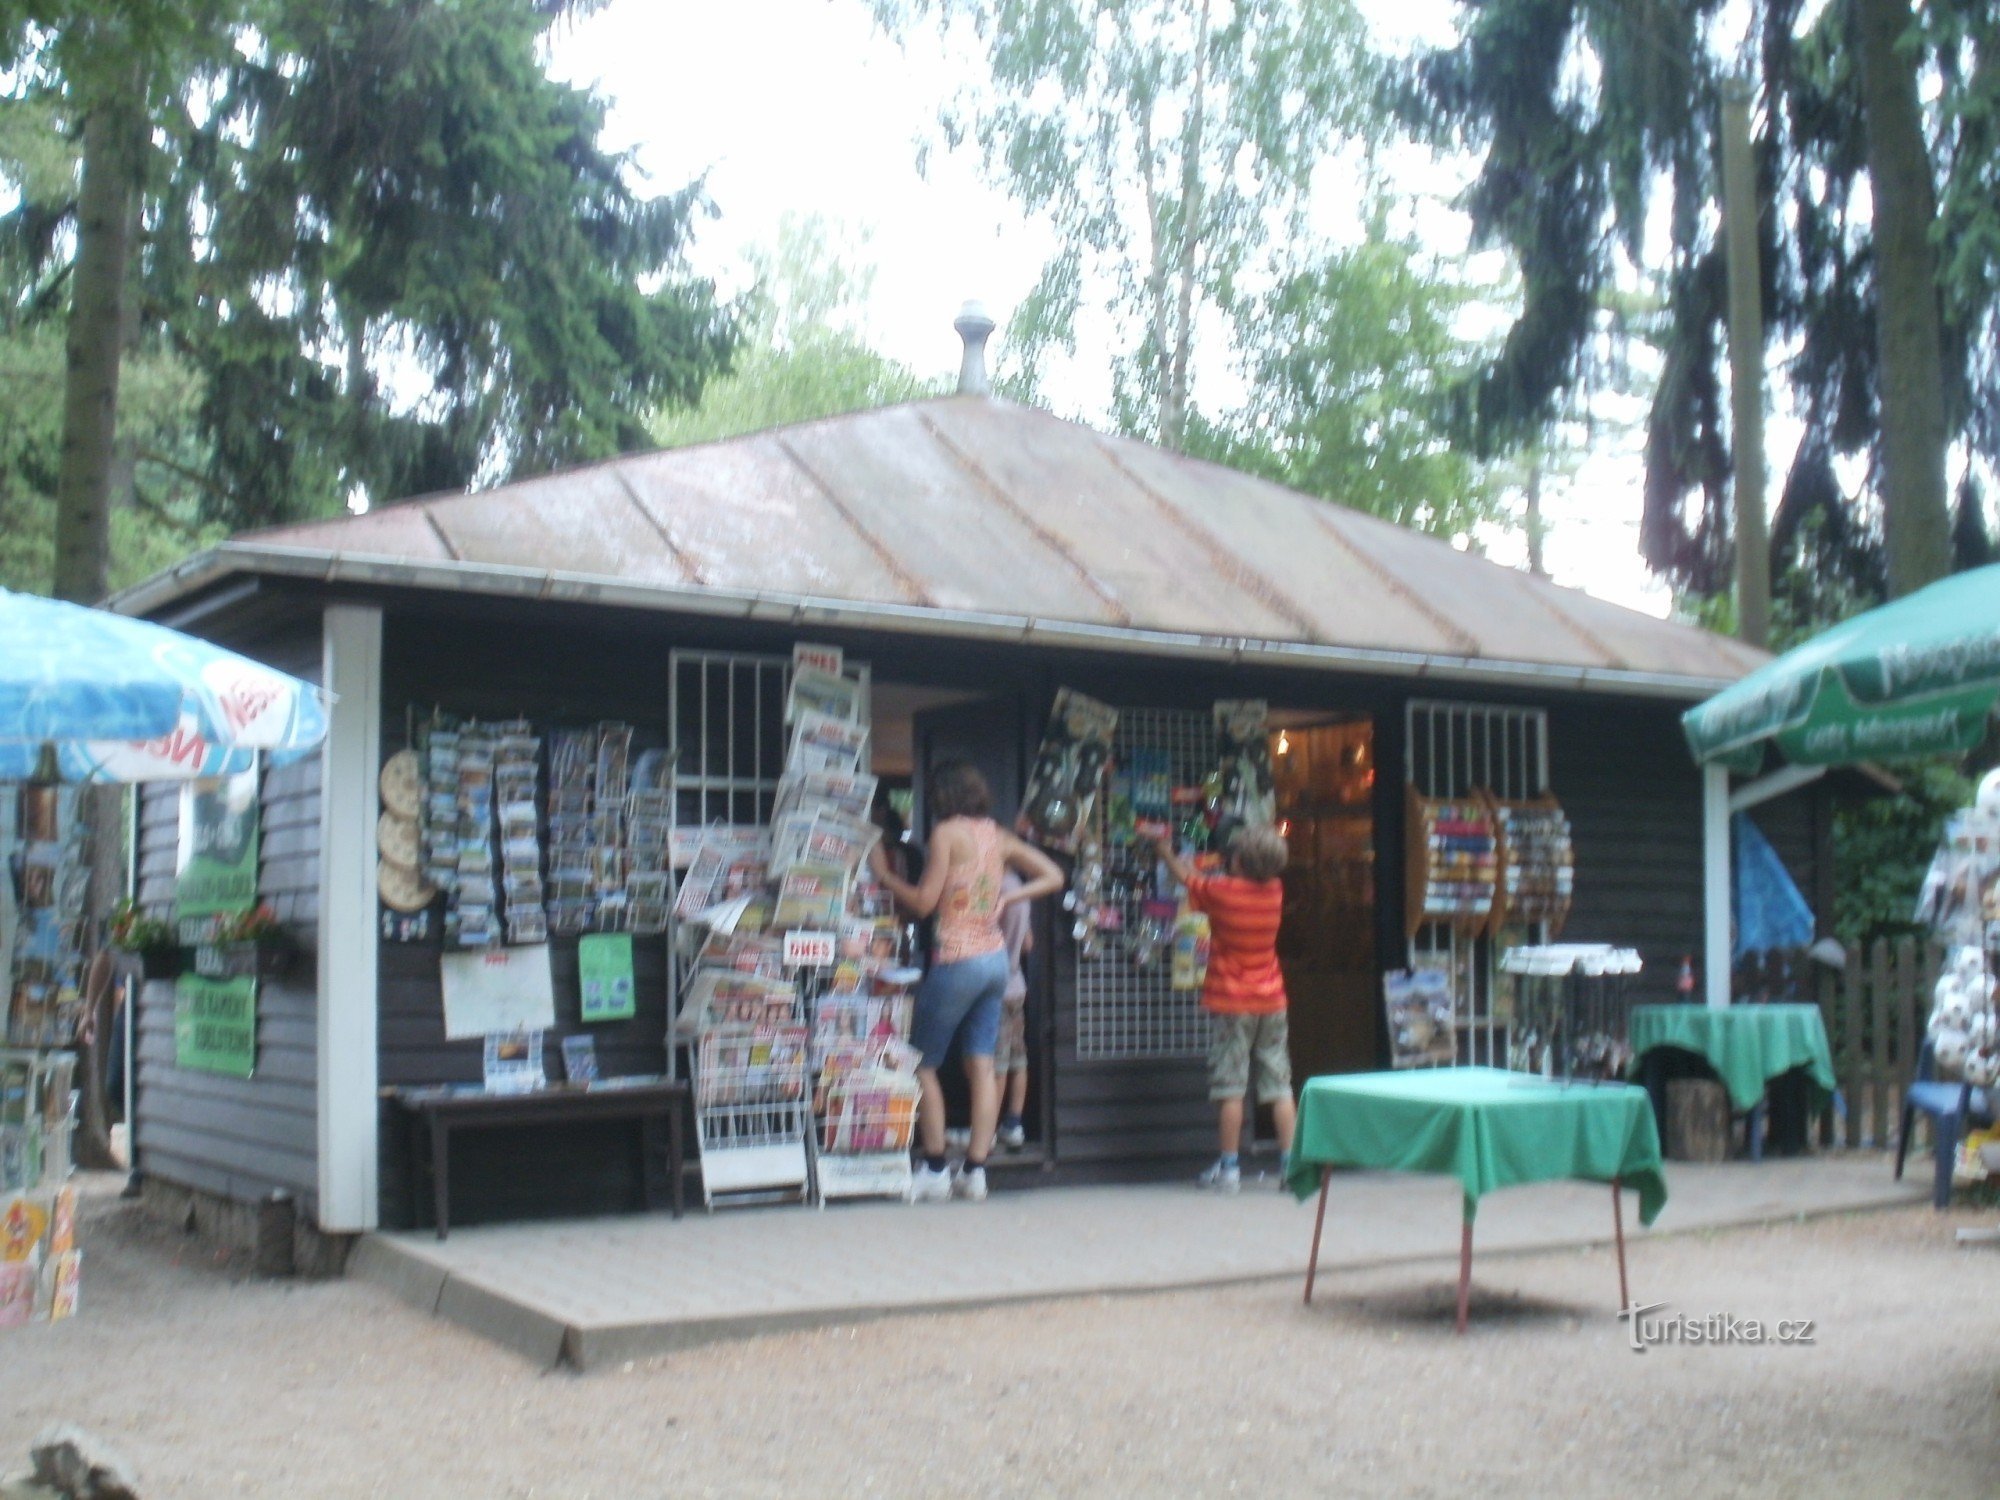 Prachov - centro turístico Bohemian Paradise, centro de información